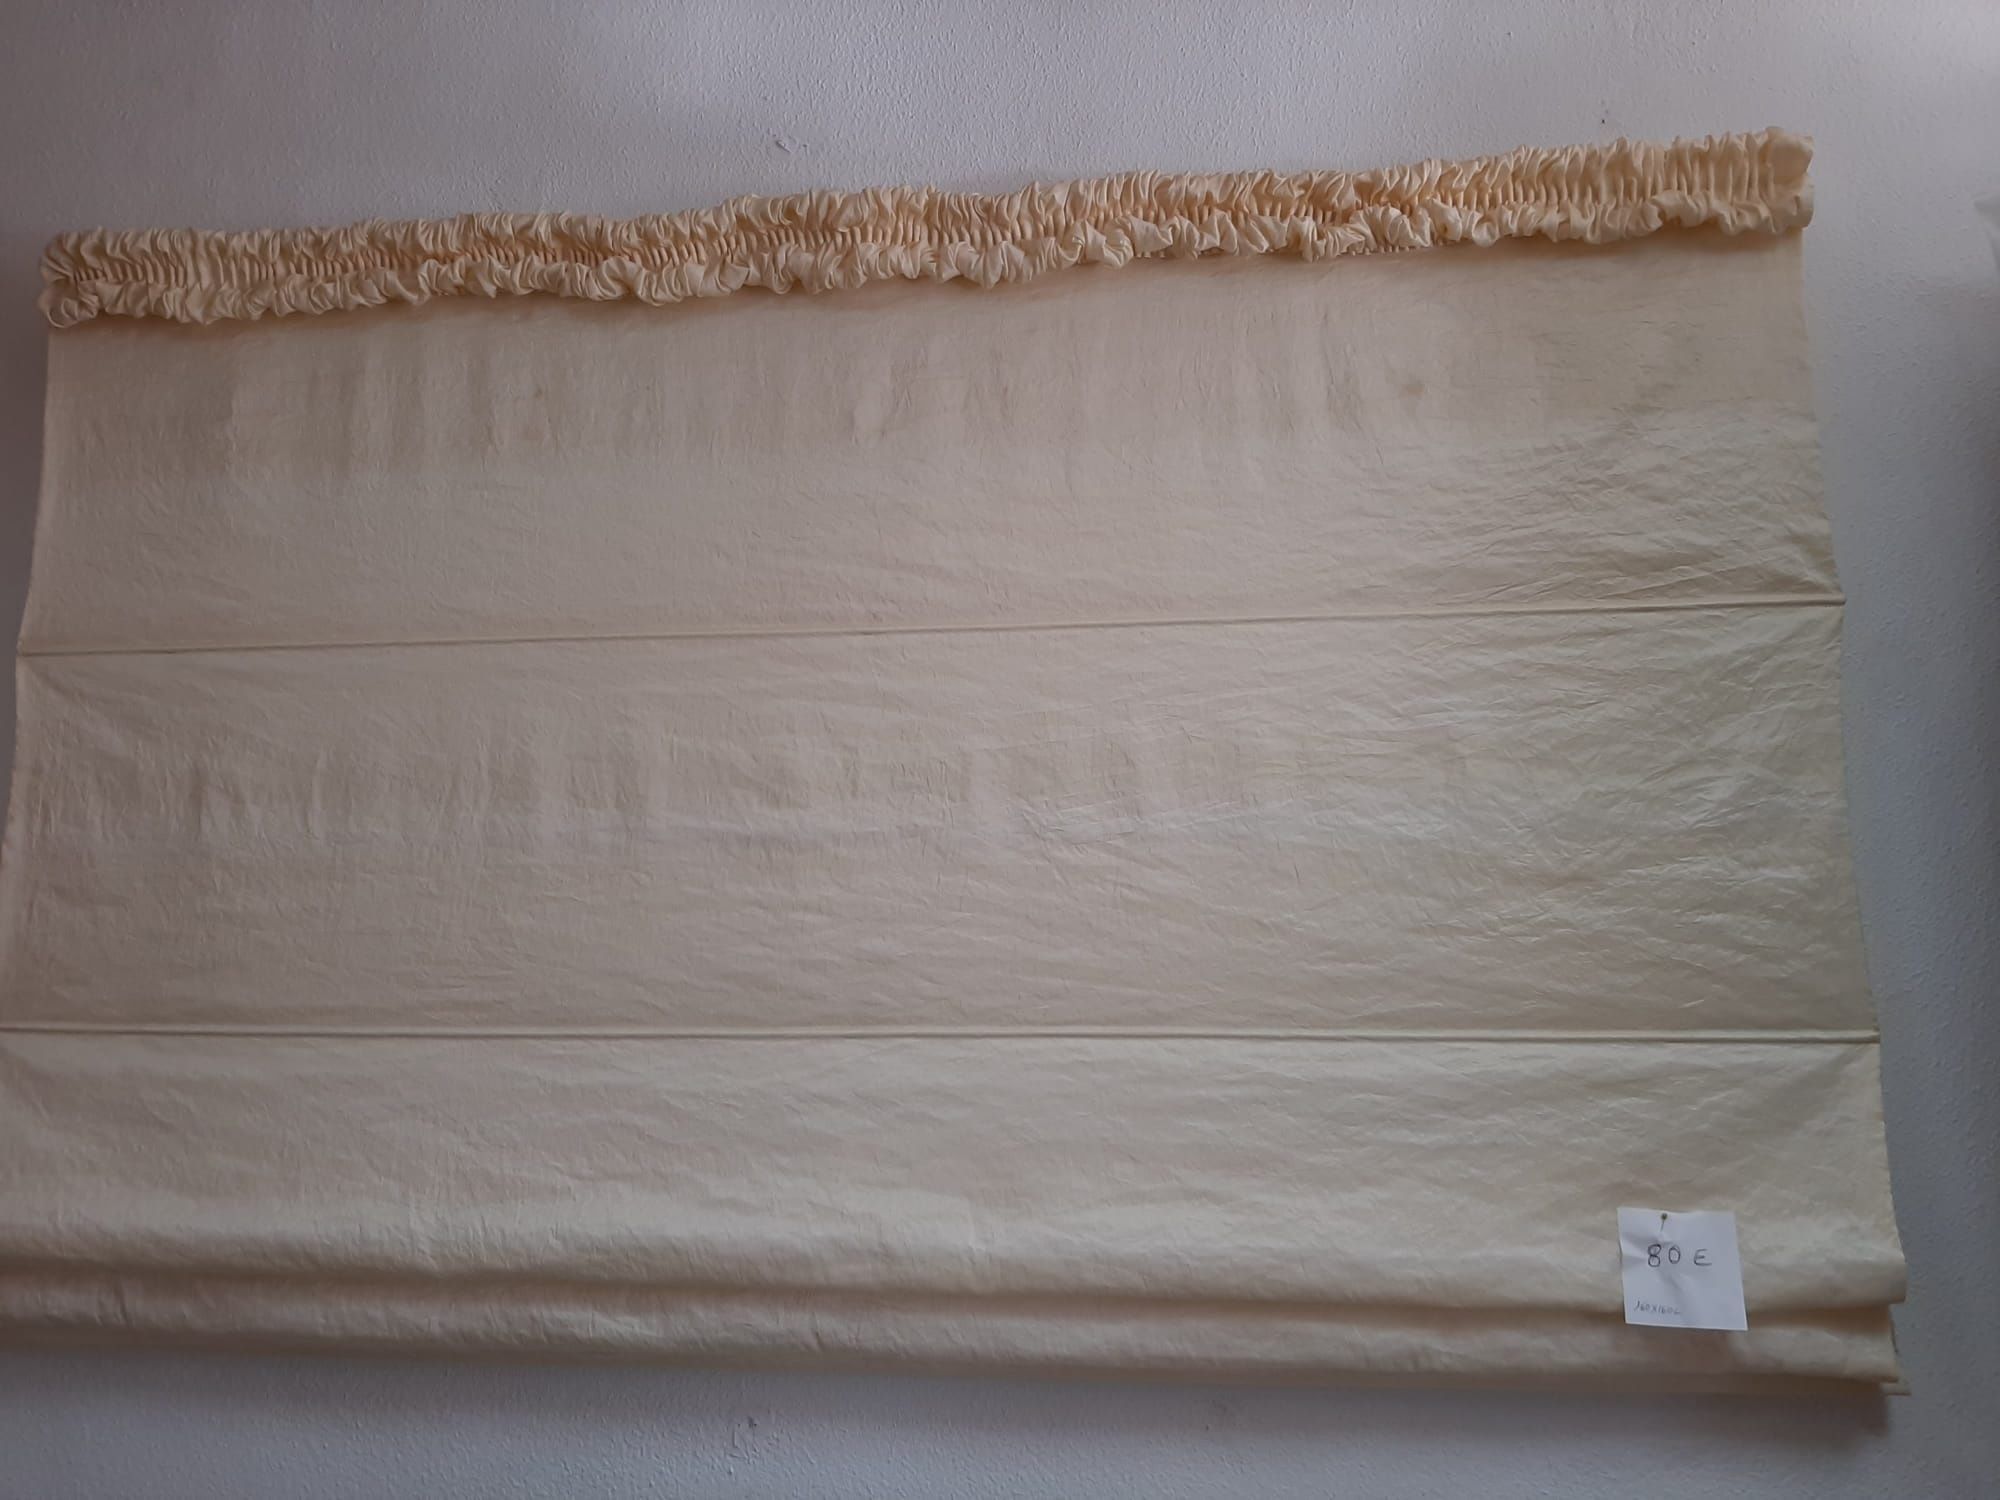 Japonês em crepom de seda 1,60m x 1,60m